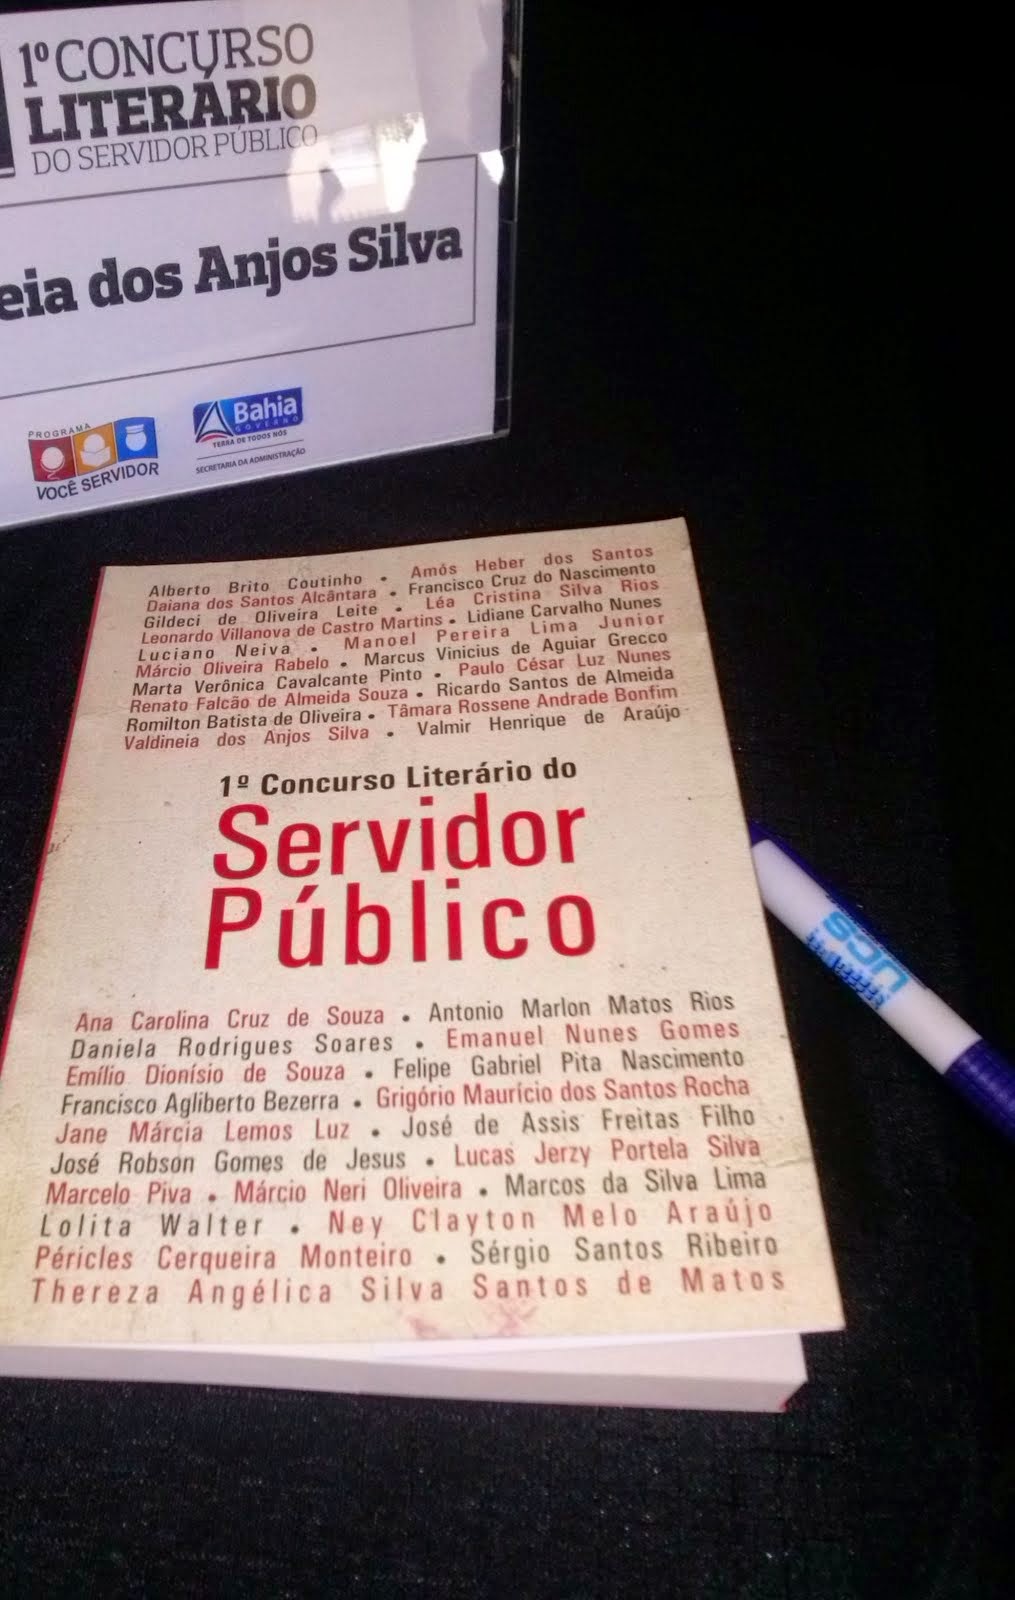 Participação no livro do I Concurso Literário do Servidor Público do Estado da Bahia